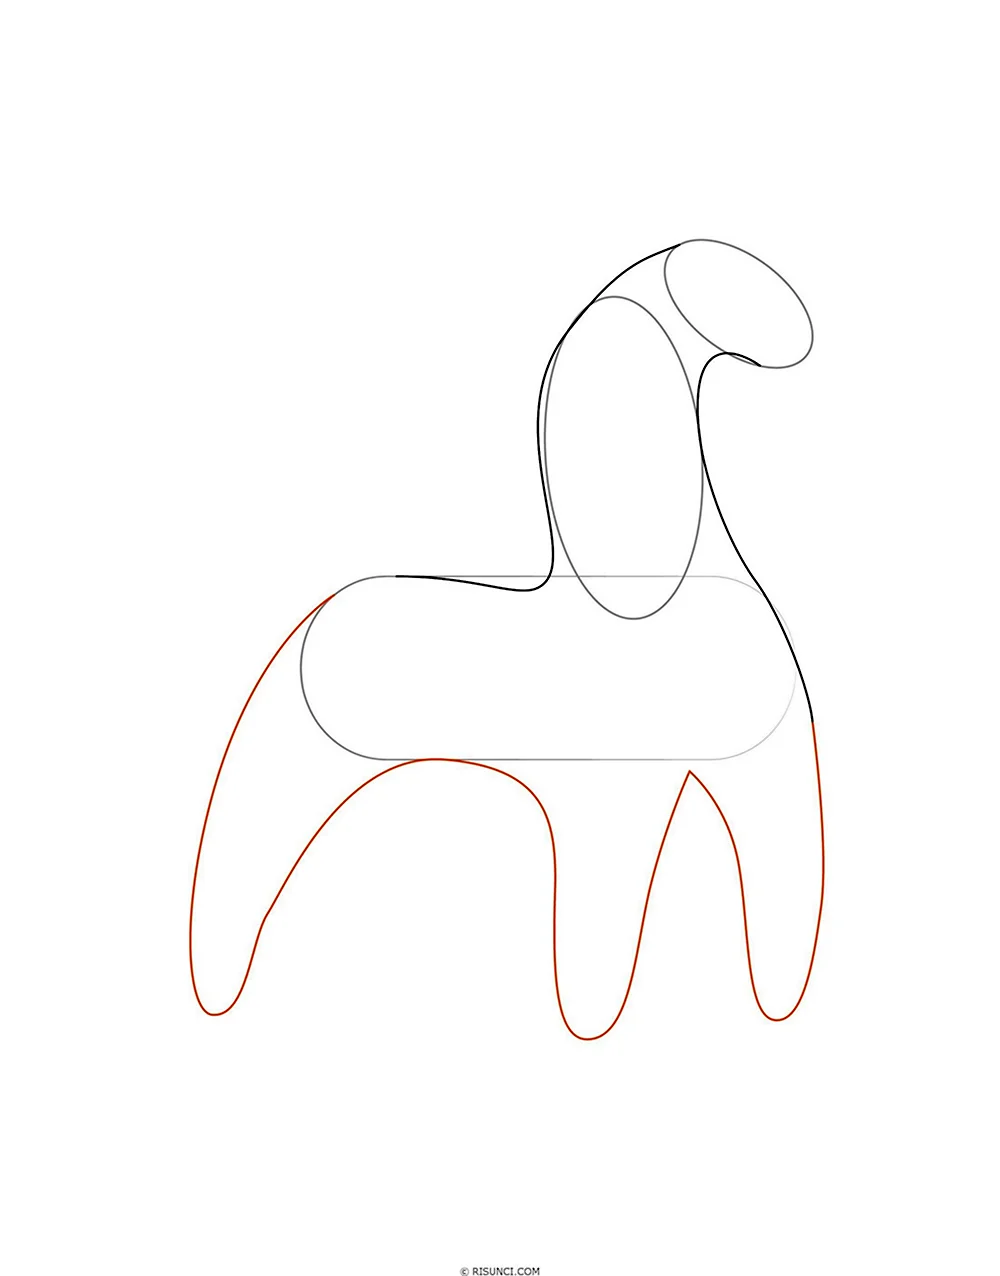 Этапы рисования дымковского коня